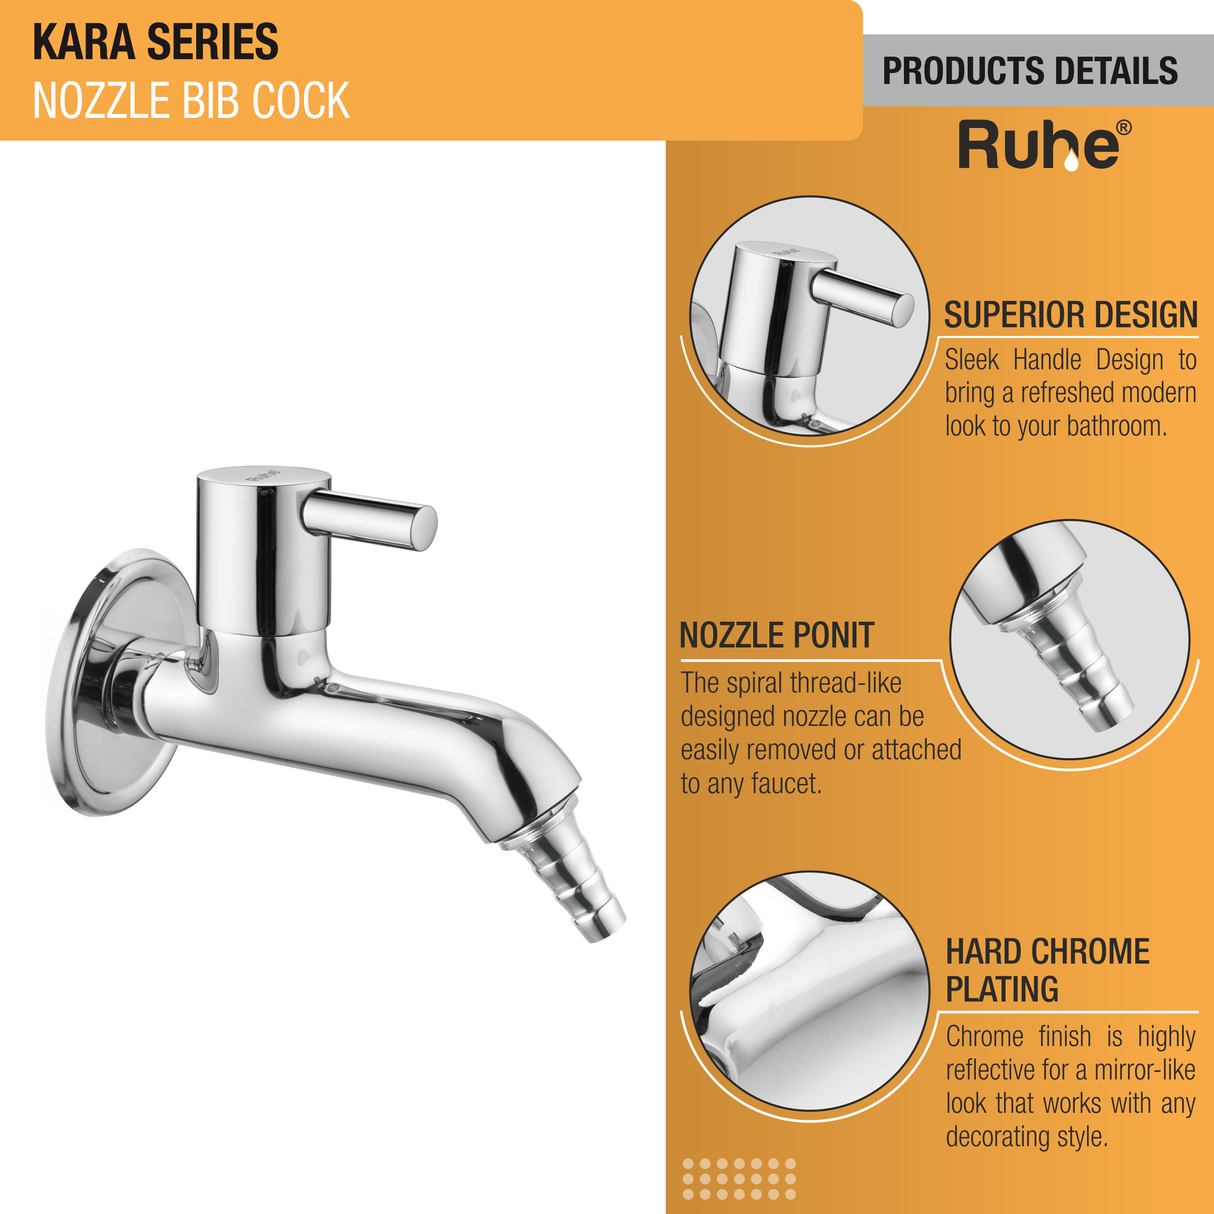 Kara Nozzle Bib Cock Faucet details